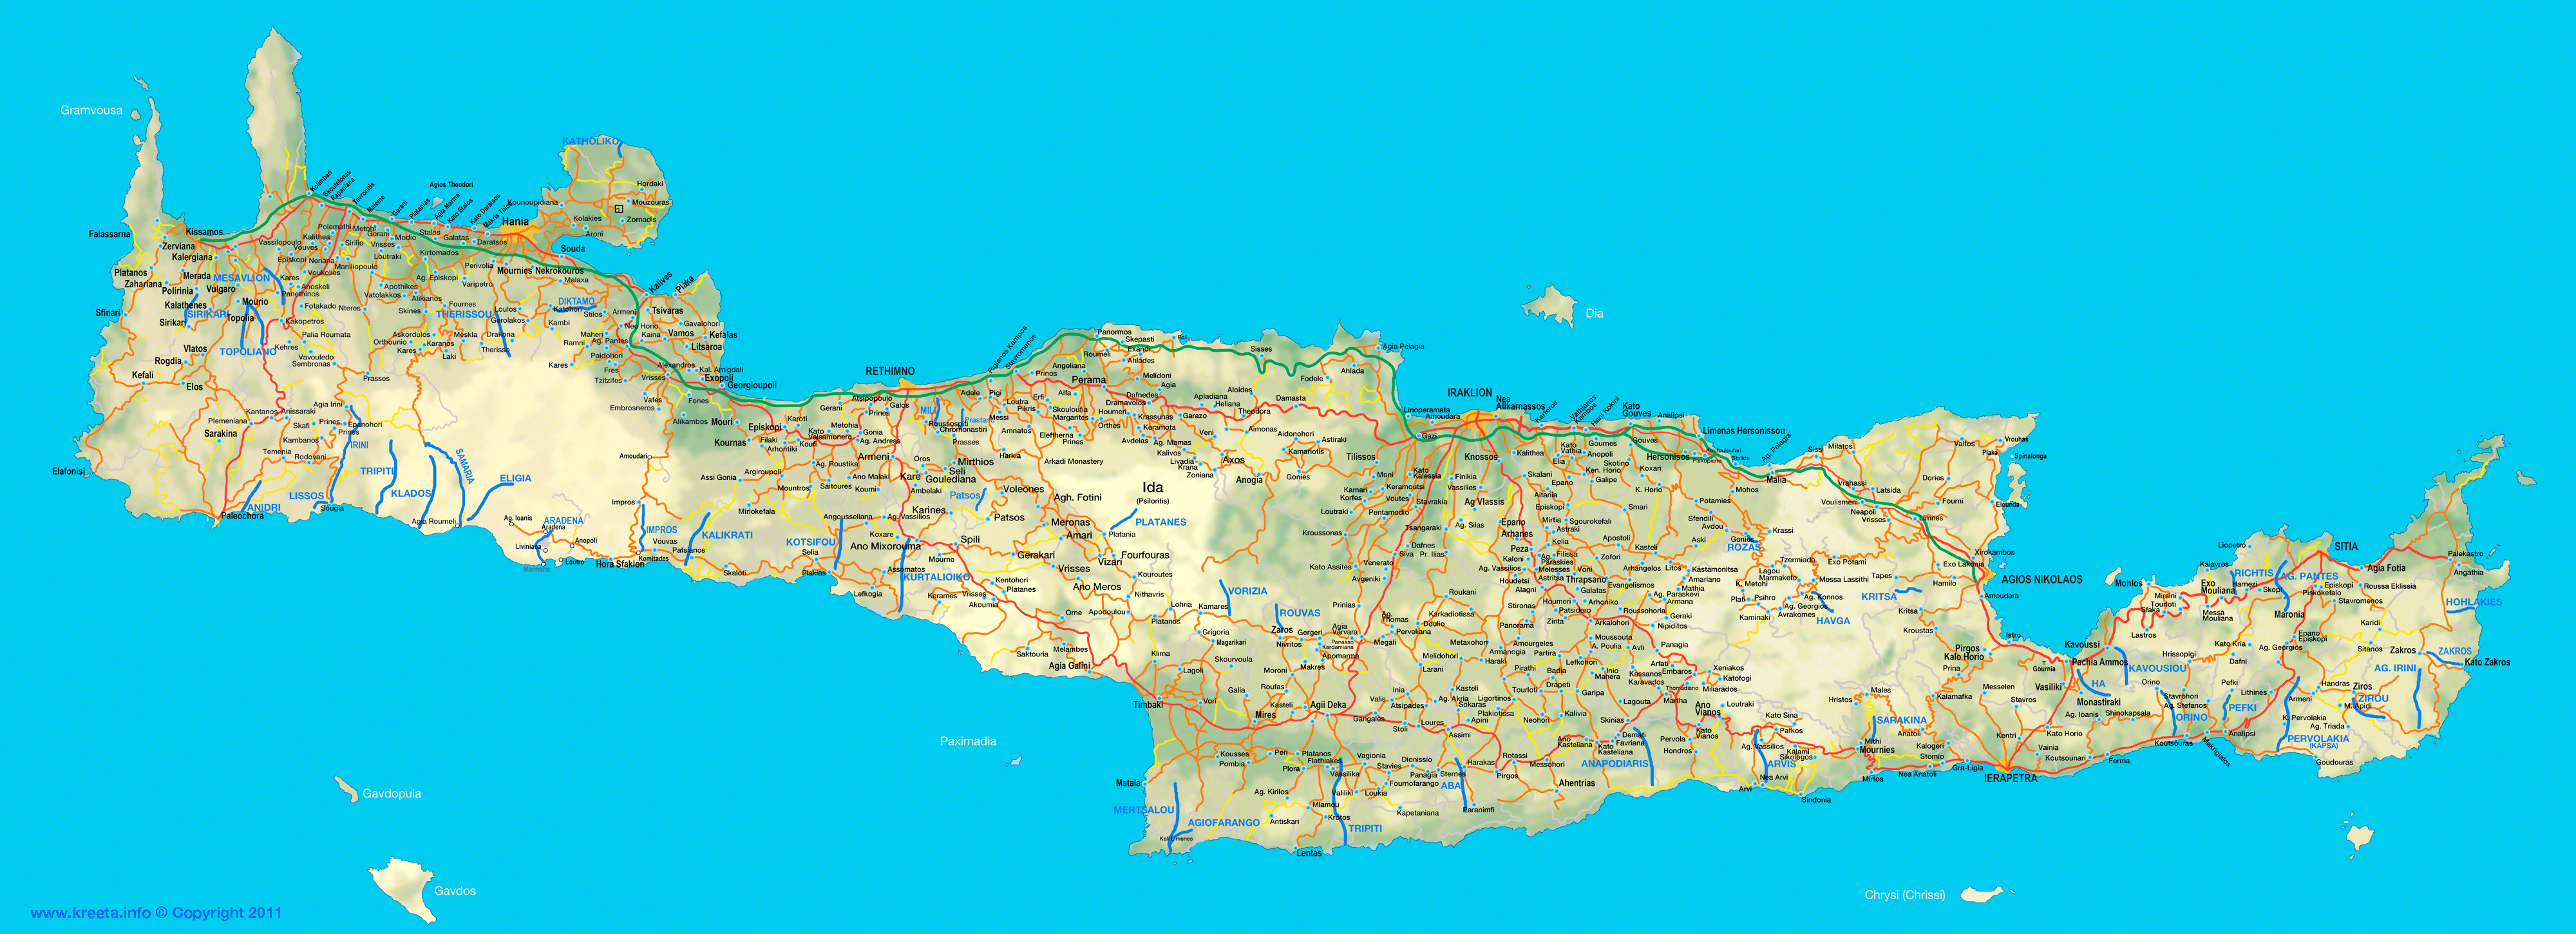 kreetan kartta Kreetan kartat – Kreeta.info kreetan kartta